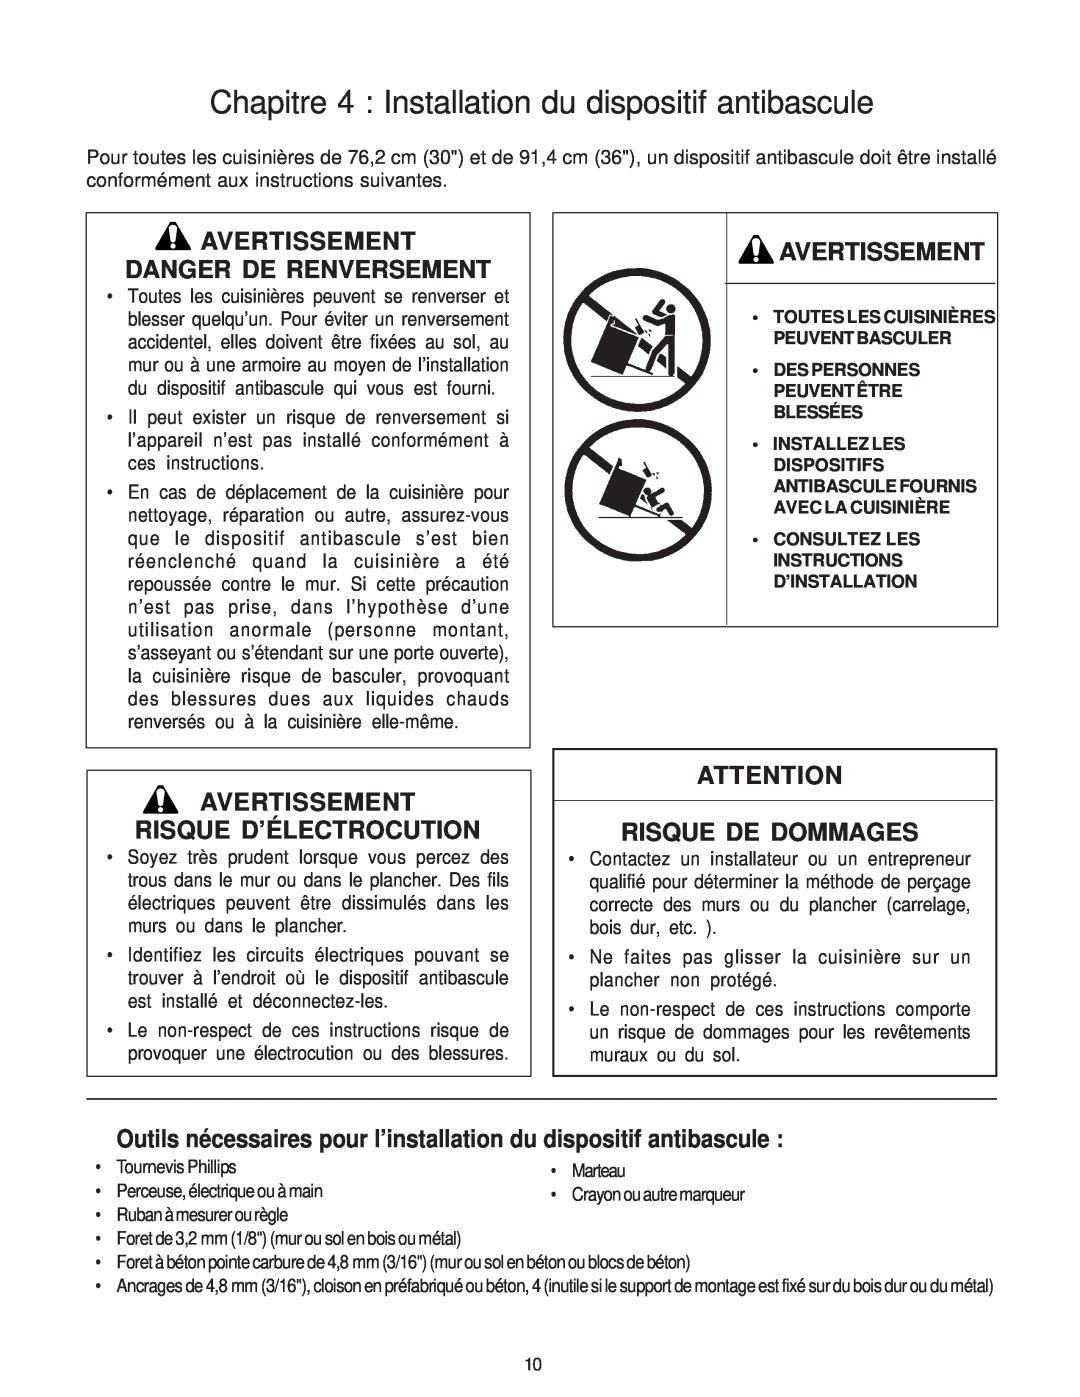 Thermador PD30 Avertissement Danger De Renversement, Avertissement Risque D’Électrocution, Risque De Dommages 